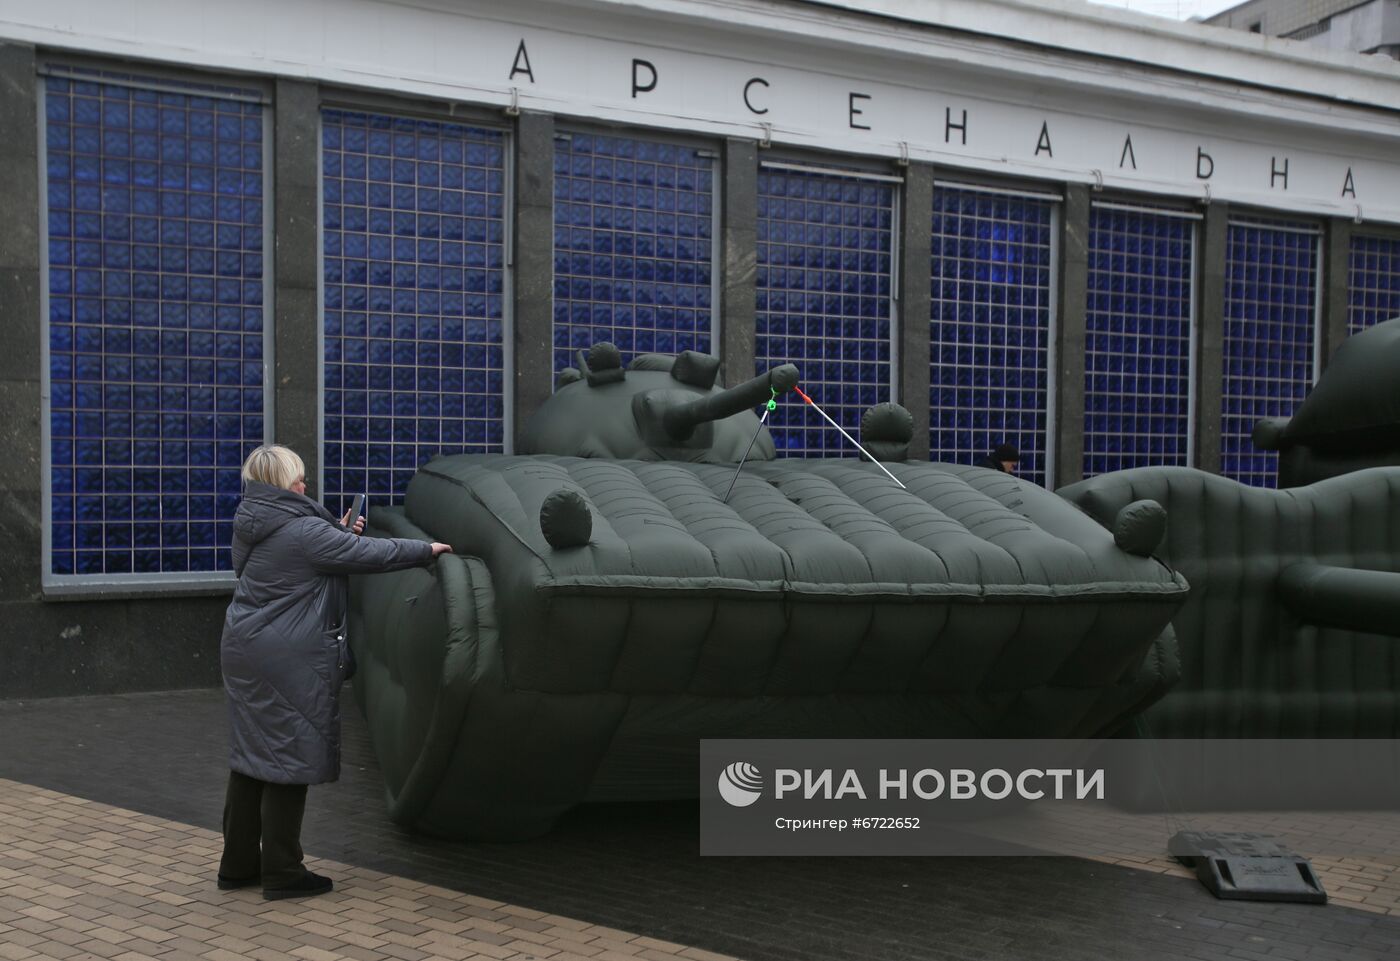 Предприниматель в знак протеста выставил надувную военную технику в Киеве